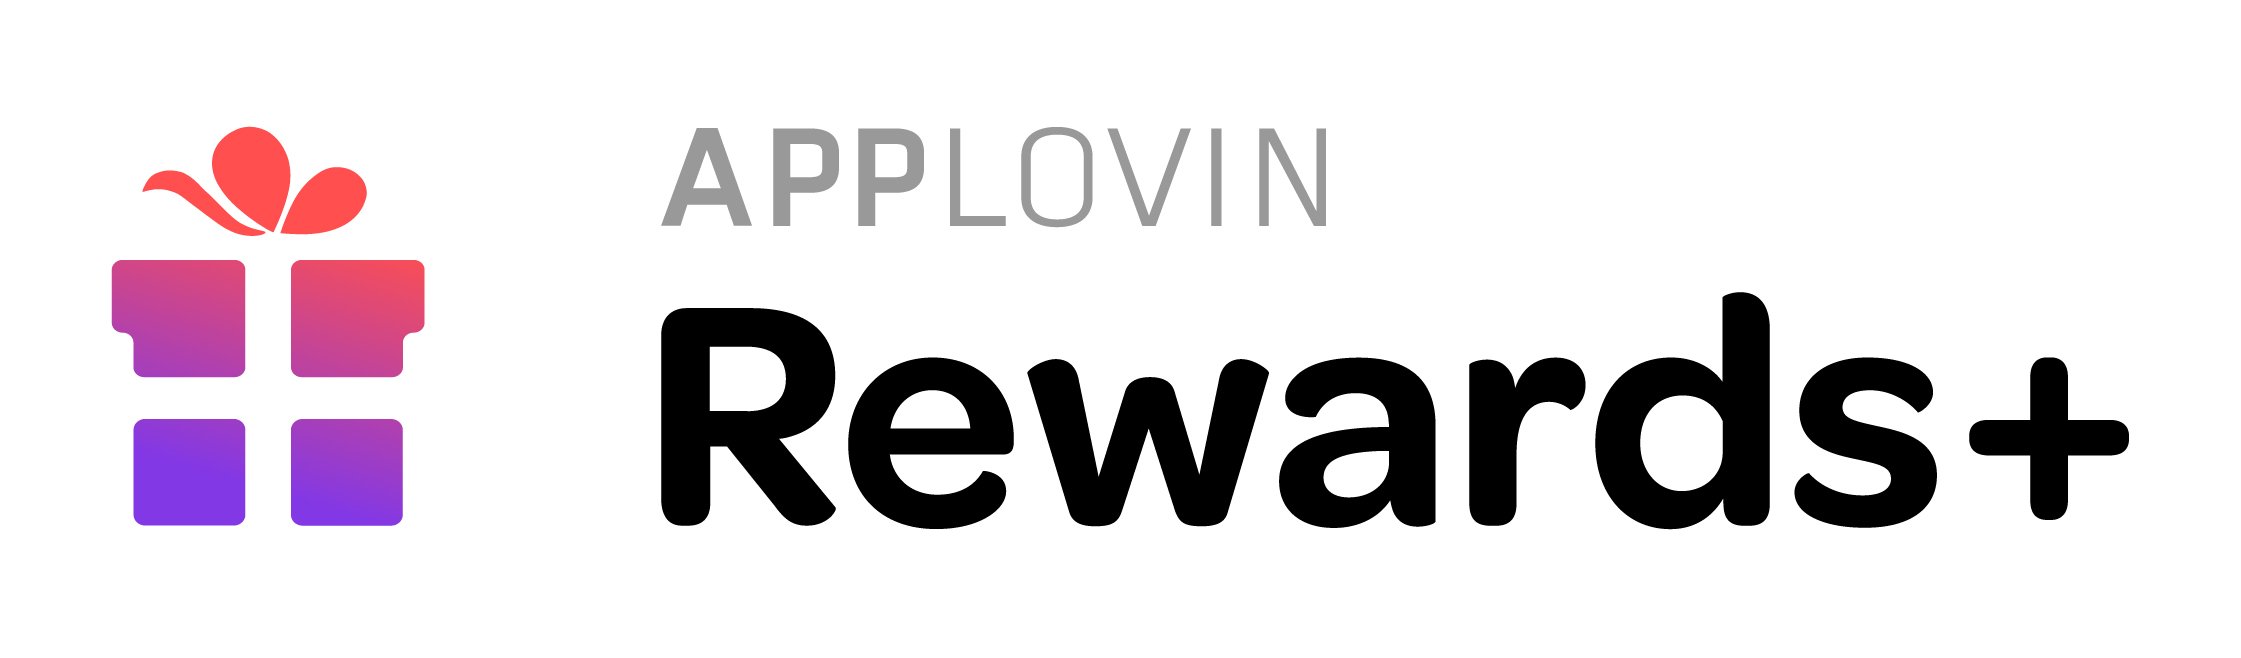 Rewards+ by AppLovin